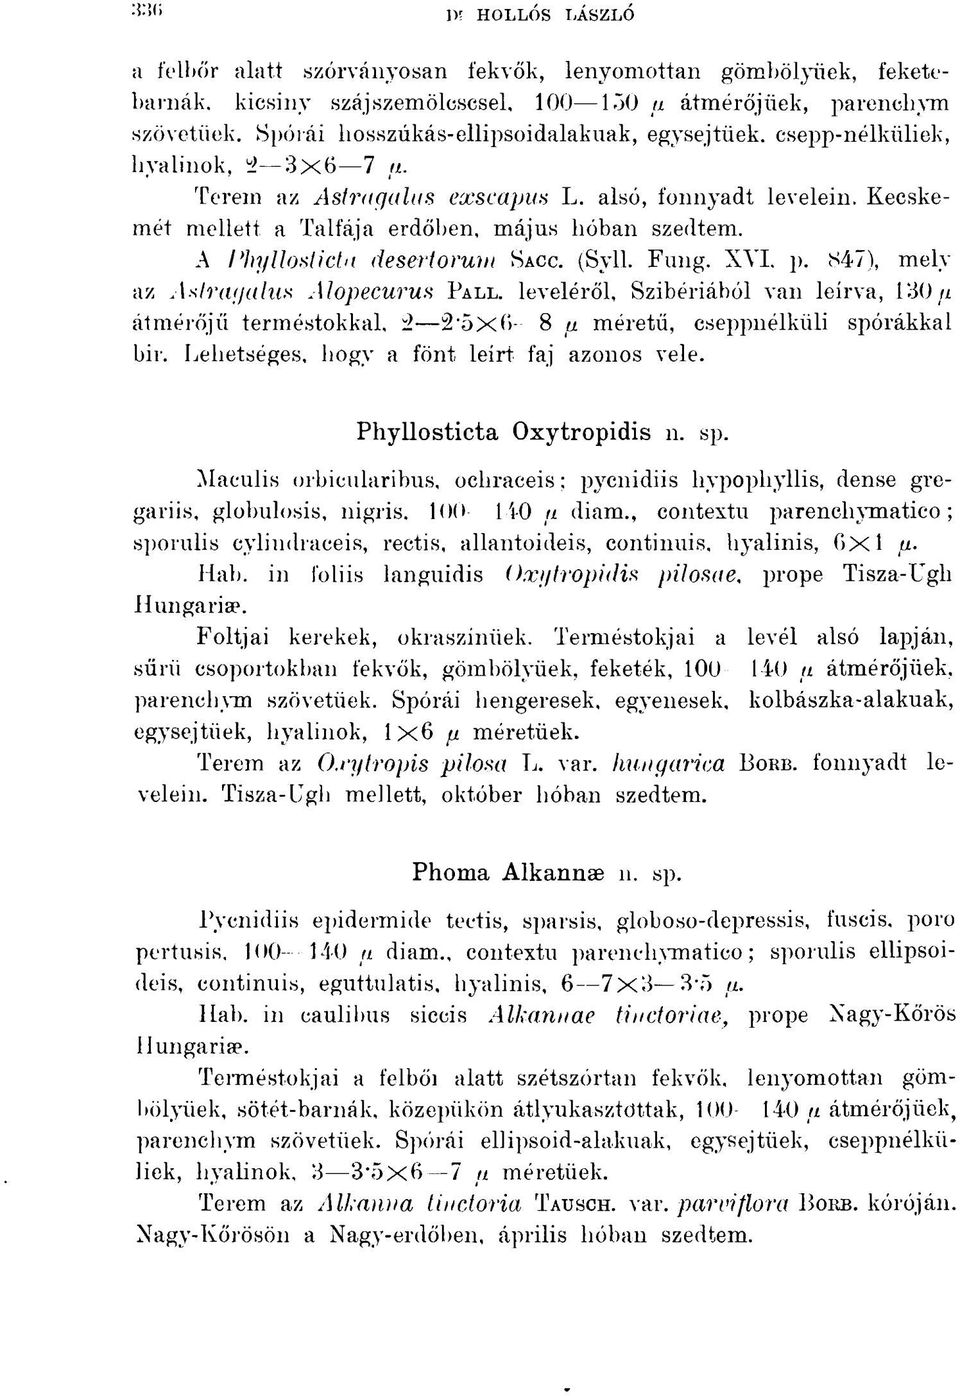 A Phylloslicta desertorurn SACC. (Syll. Fung. XVI. p. 847), mely az Astragalus Alopecurus PALL. leveléről, Szibériából van leírva, 130 u átmérőjű terméstokkal, 2 2-5x6 8 p.